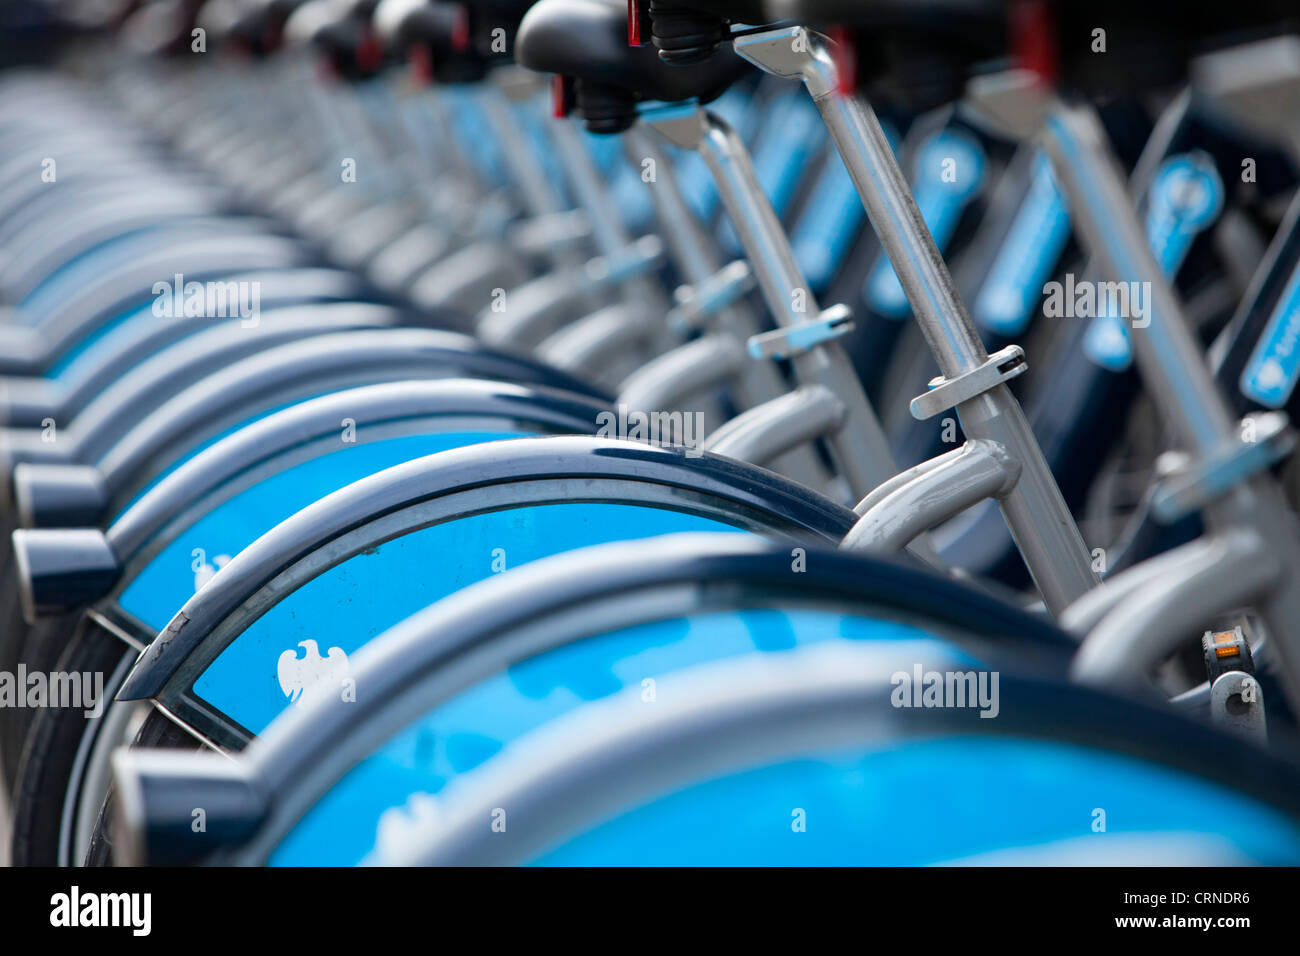 Une rangée de Barclays Cycle Hire Scheme vélos dans une station d'accueil. Banque D'Images